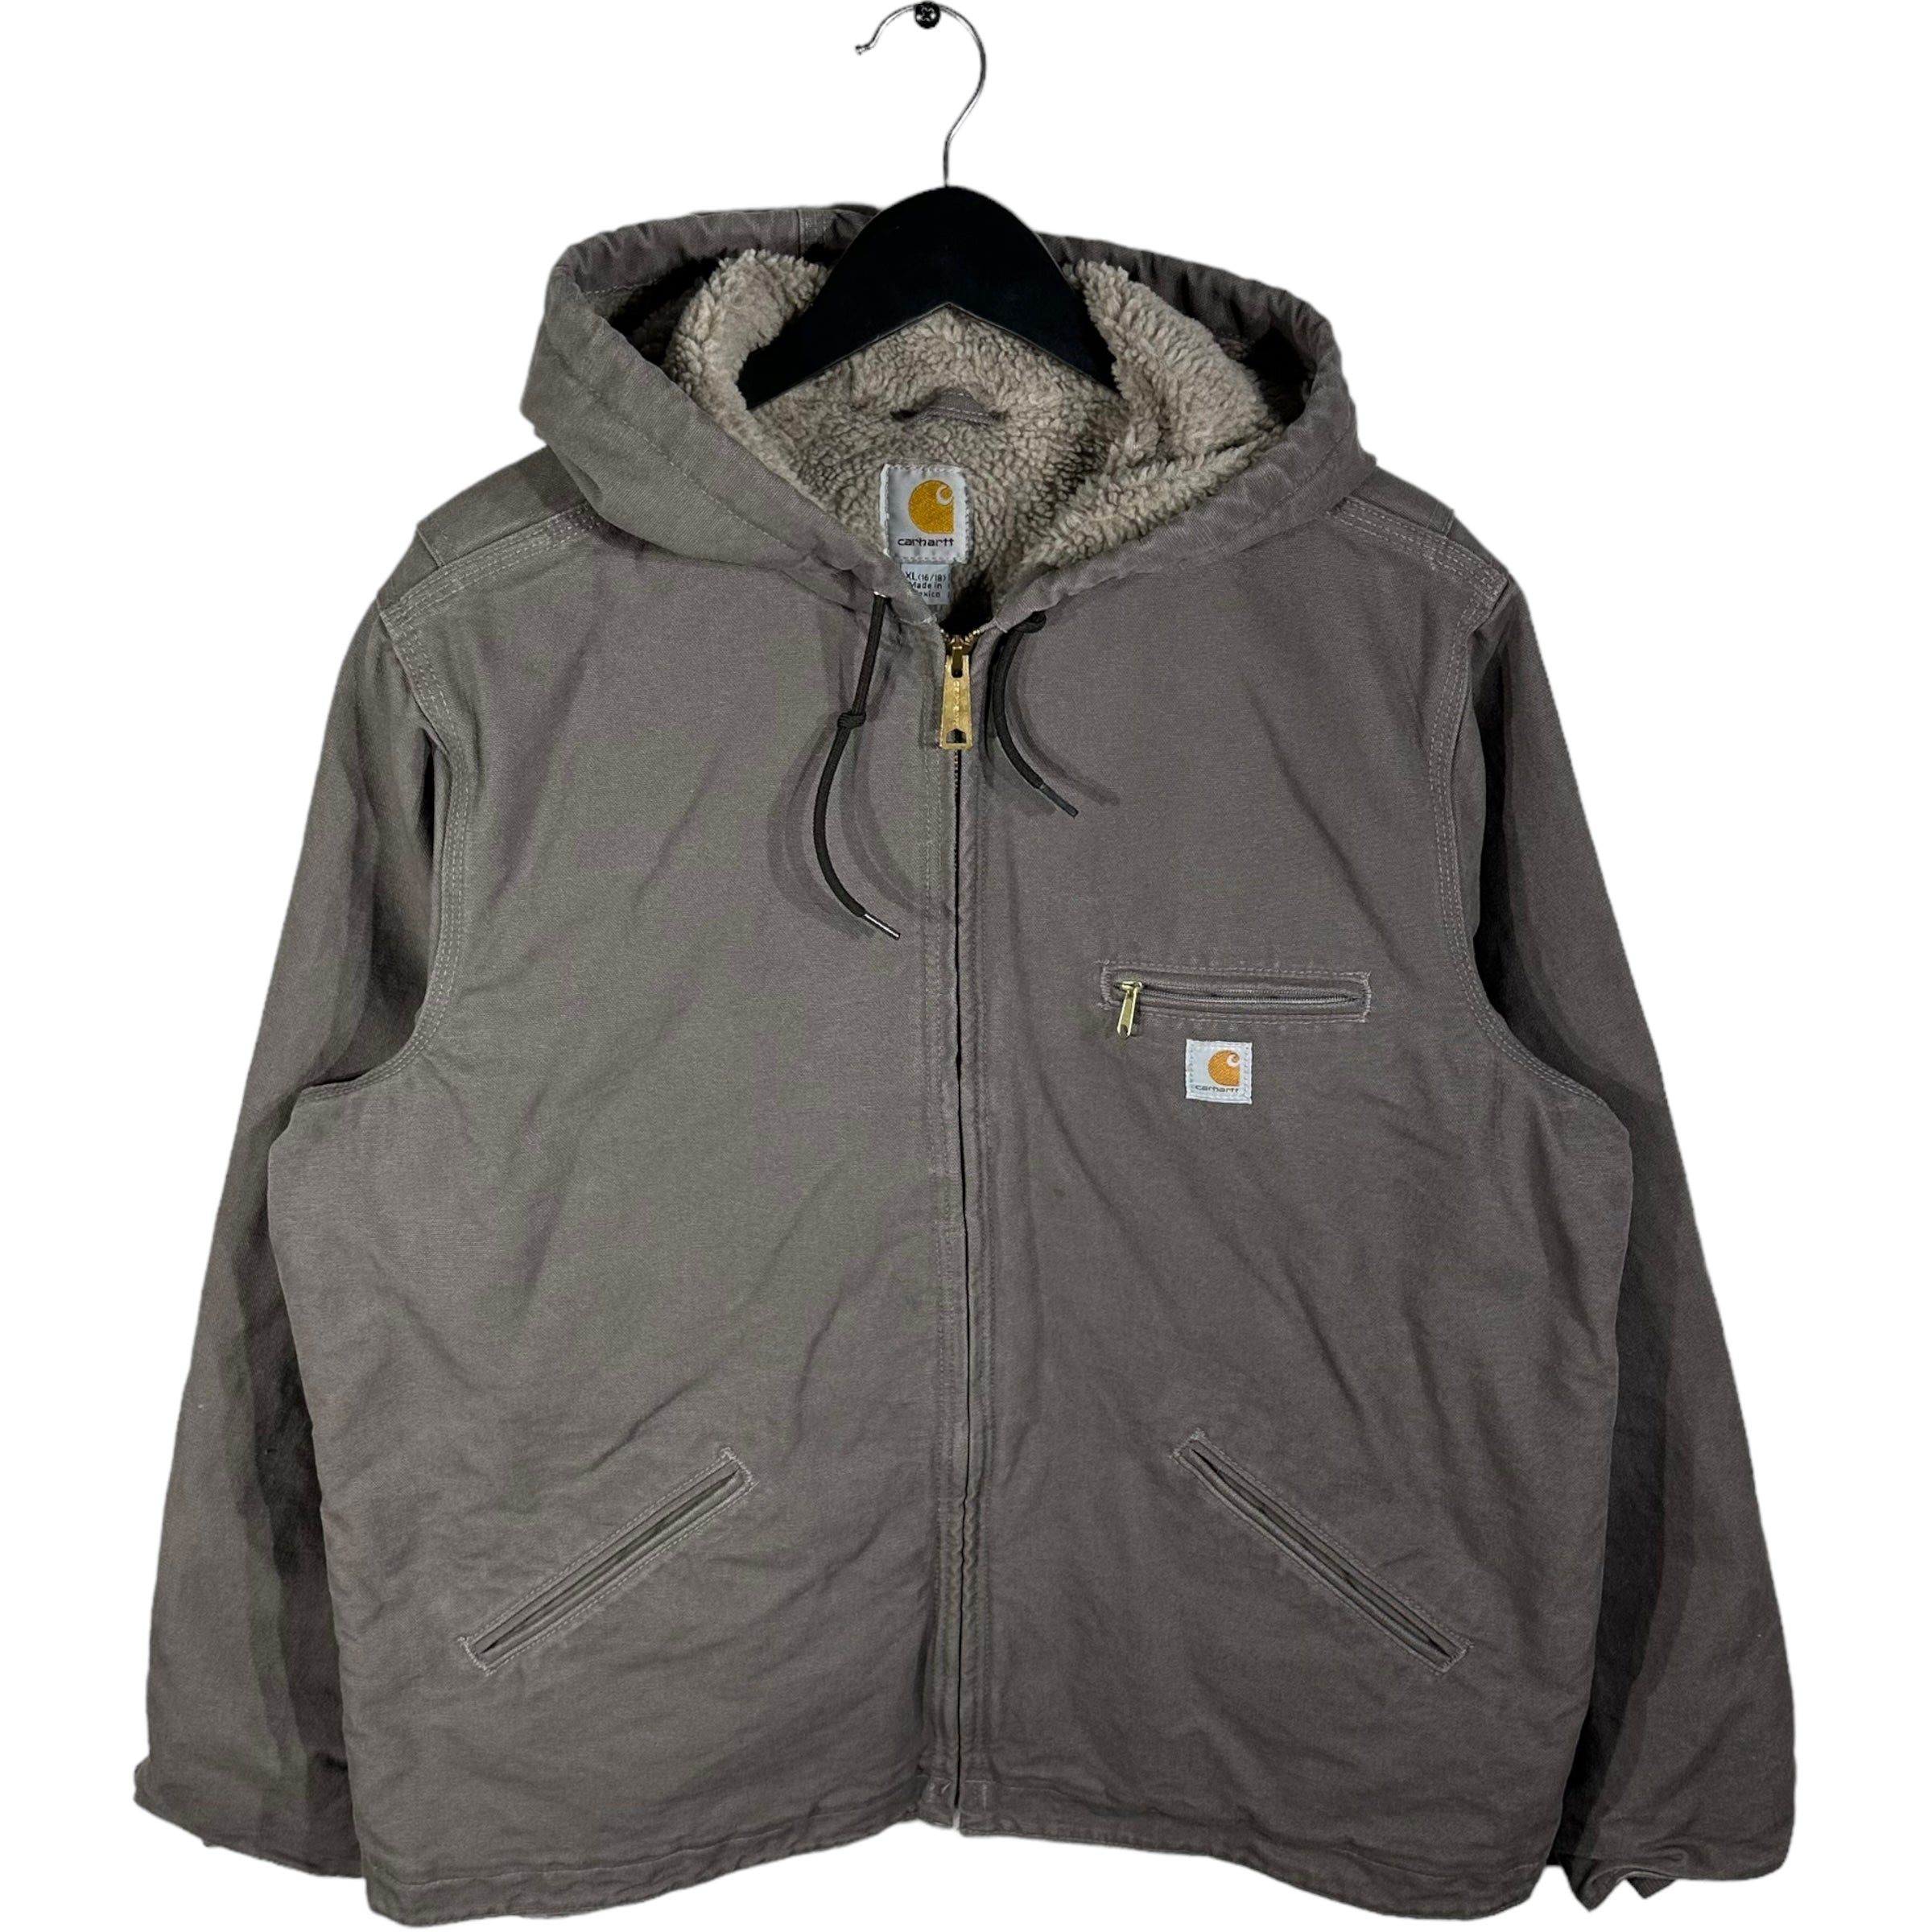 Vintage Carhartt Sherpa Lined Workwear Jacket